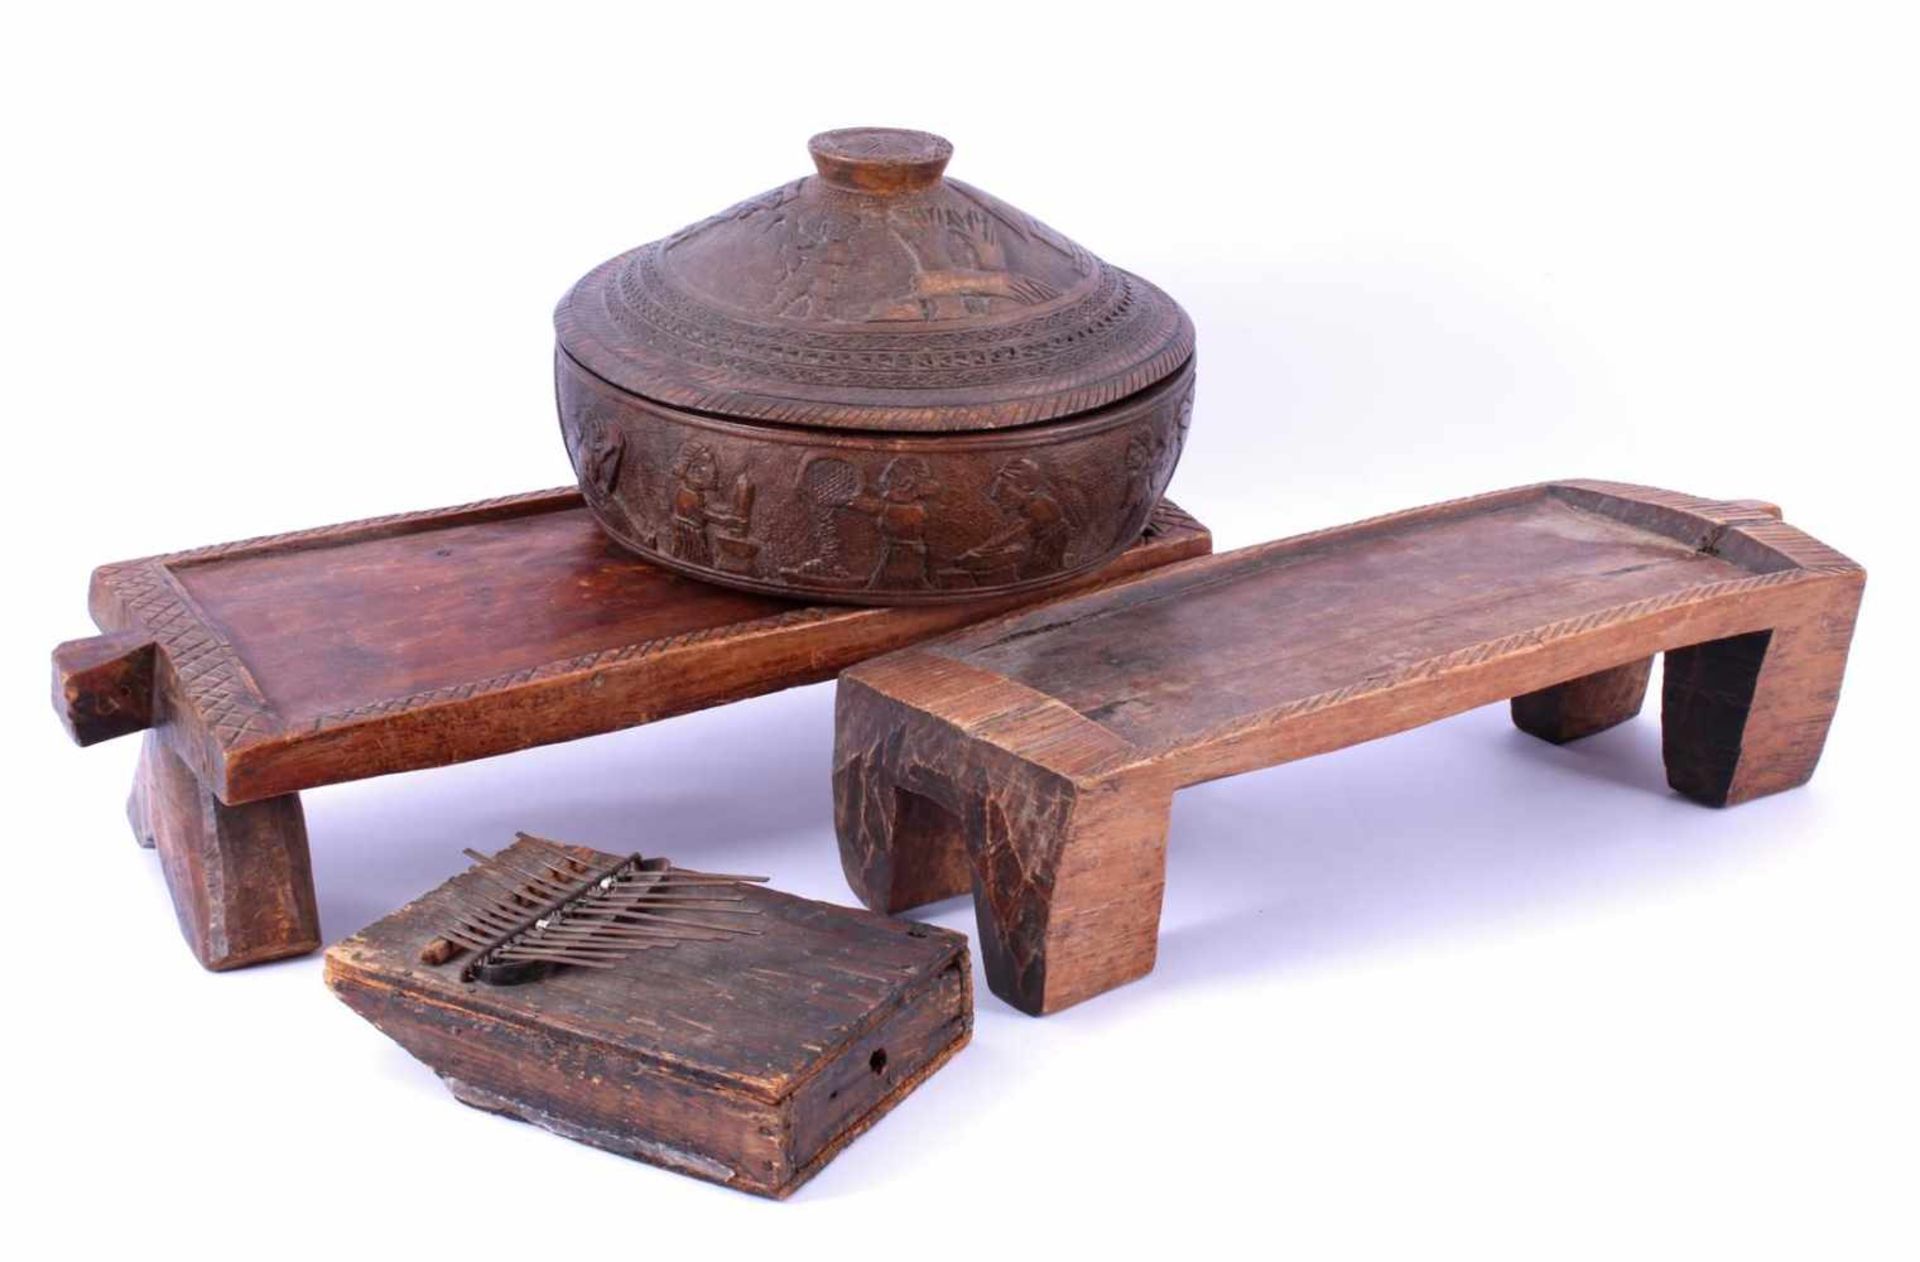 2 Houten tafeltjes voor een Afrikaans spel, 43x18 cm, ronde houten schaal met deksel en een